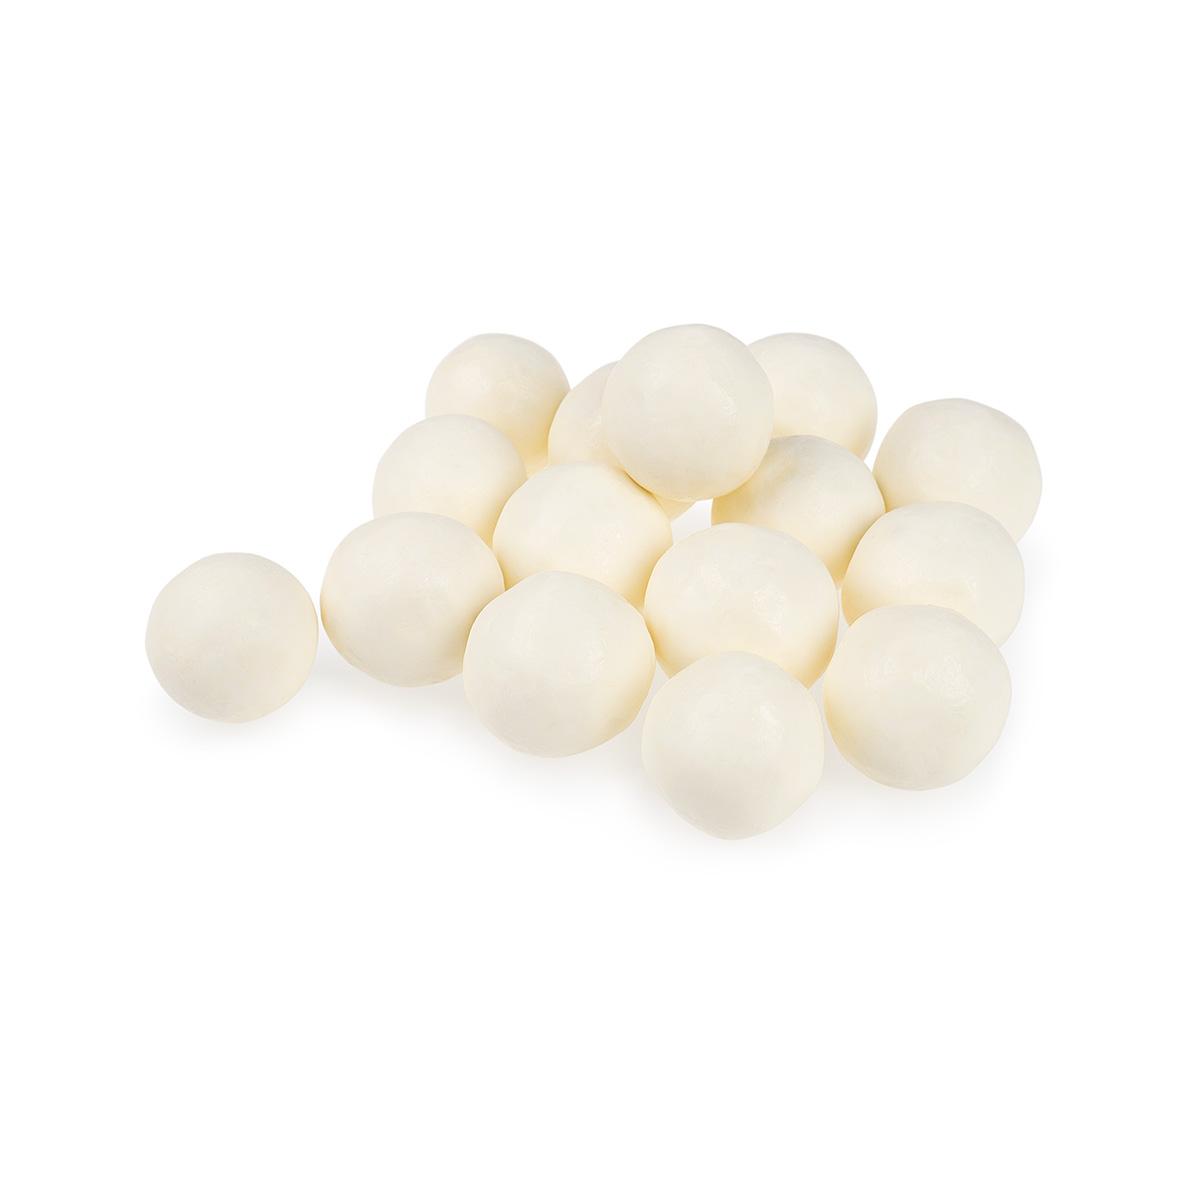  Yogurt Covered Malt Balls Candy - 1 Lb.